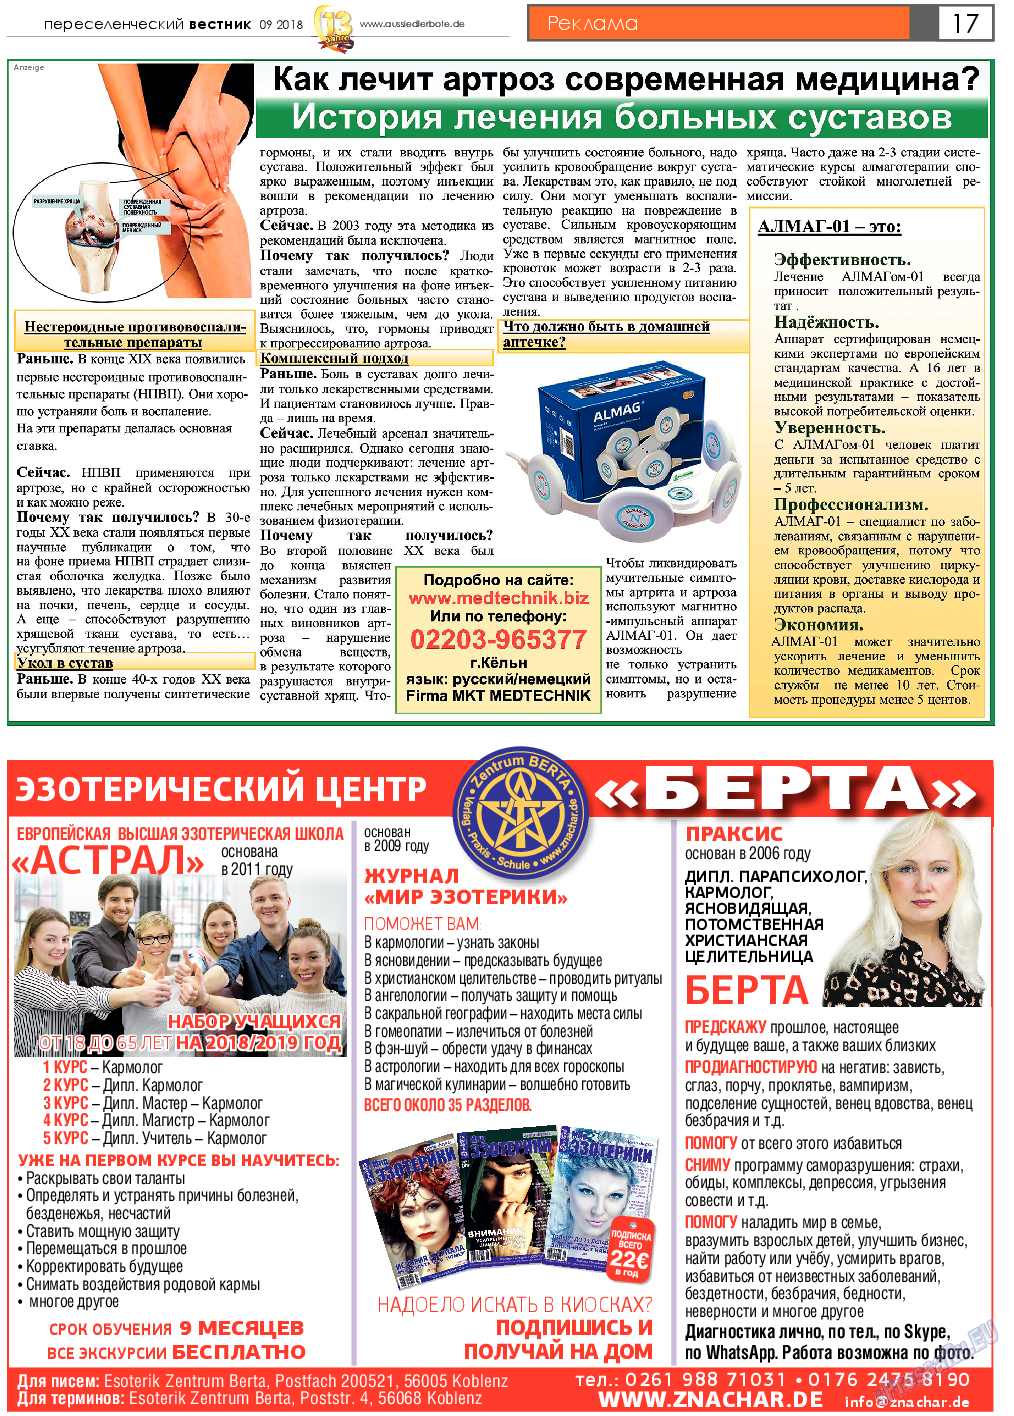 Переселенческий вестник, газета. 2018 №9 стр.17